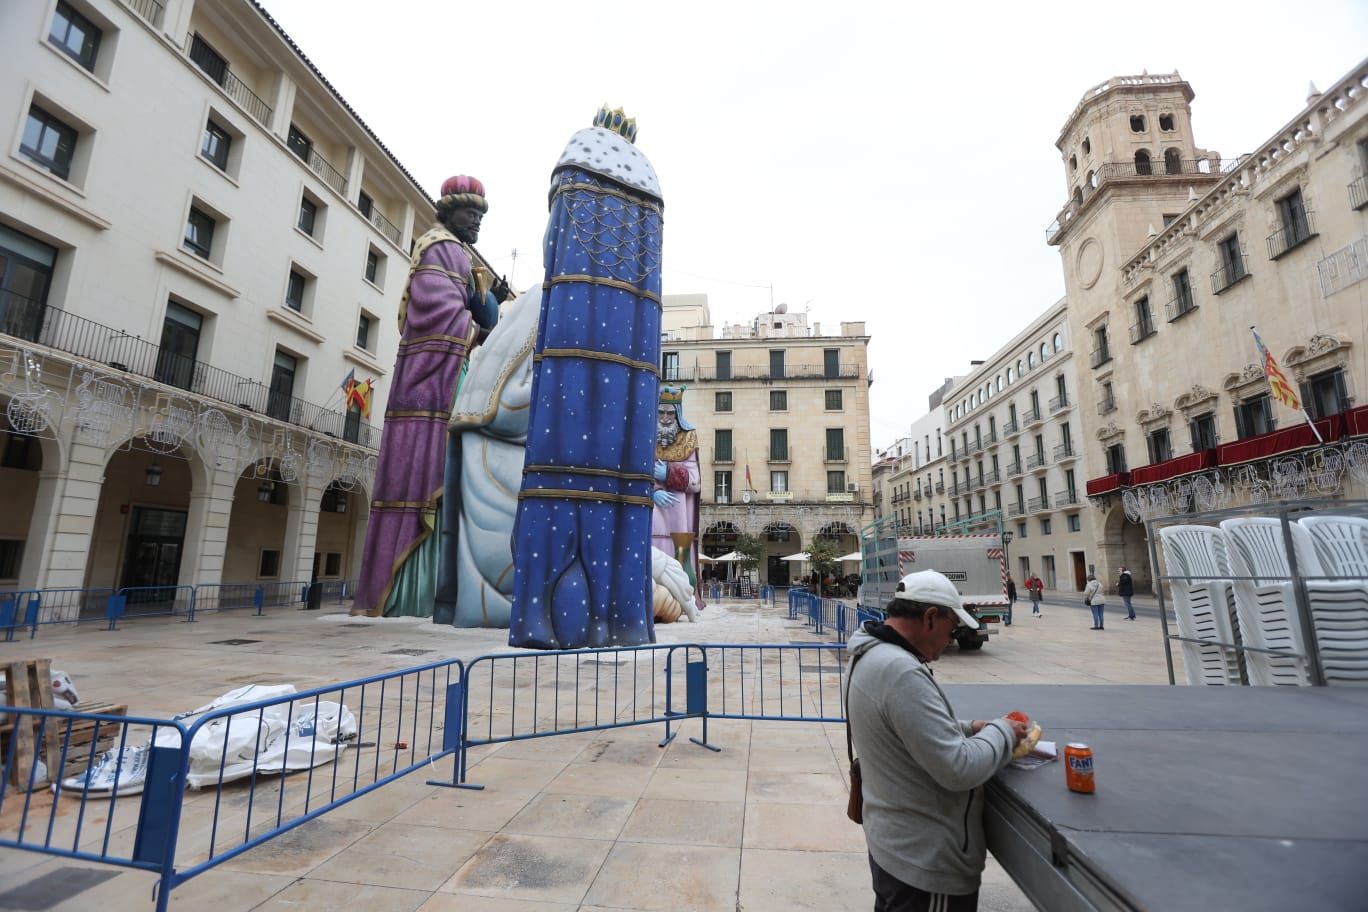 Se armó el Belén en Alicante, así luce el monumental nacimiento en la Plaza del Ayuntamiento